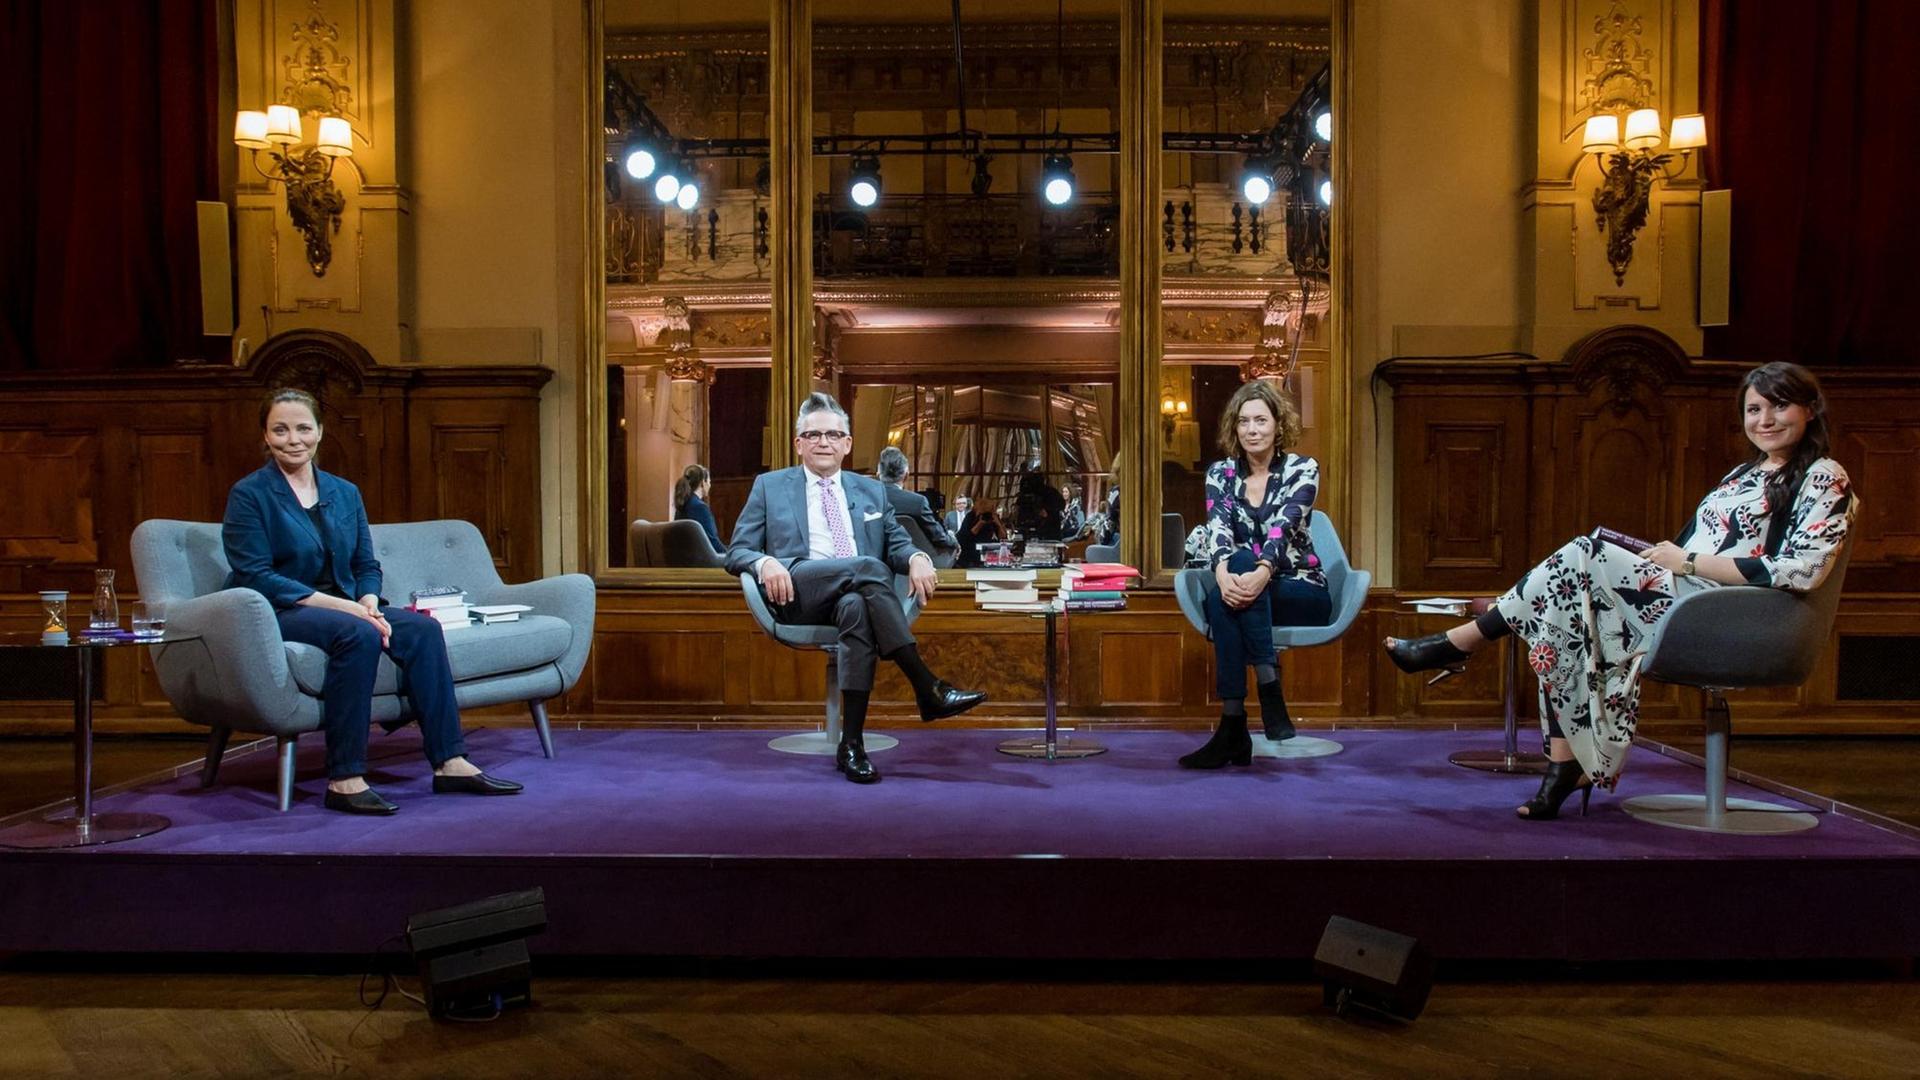 "Das Literarische Quartett": Thea Dorn, Götz Alsmann, Eva Menasse und Vea Kaiser sitzen, jeder auf seinem Stuhl oder kleinen Sofa, nebeneinander und schauen in die Kamera.